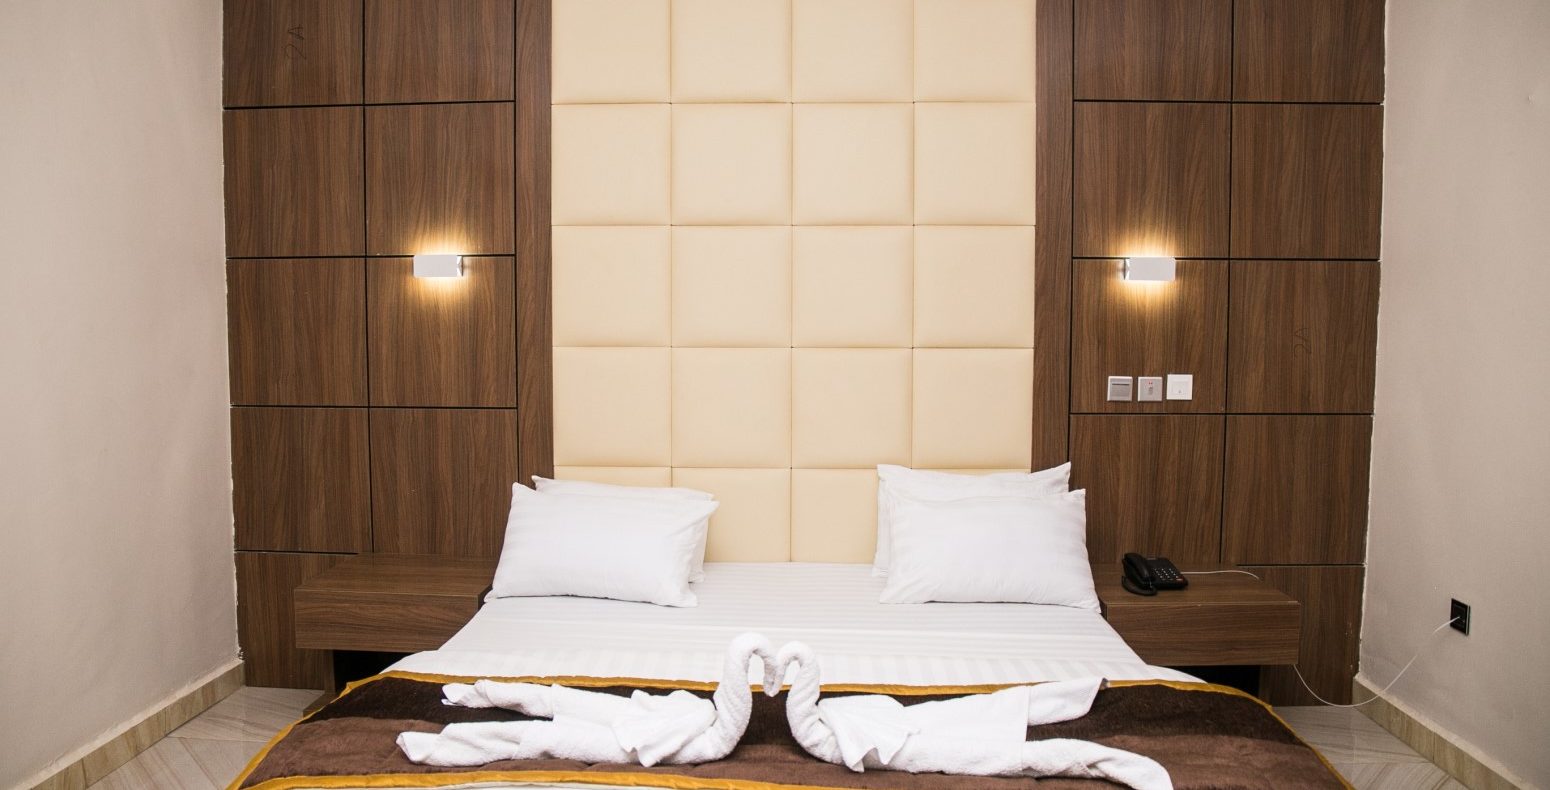 Hotel Deluxe Suites 2 Bedroom Suite In Abuja Nigeria